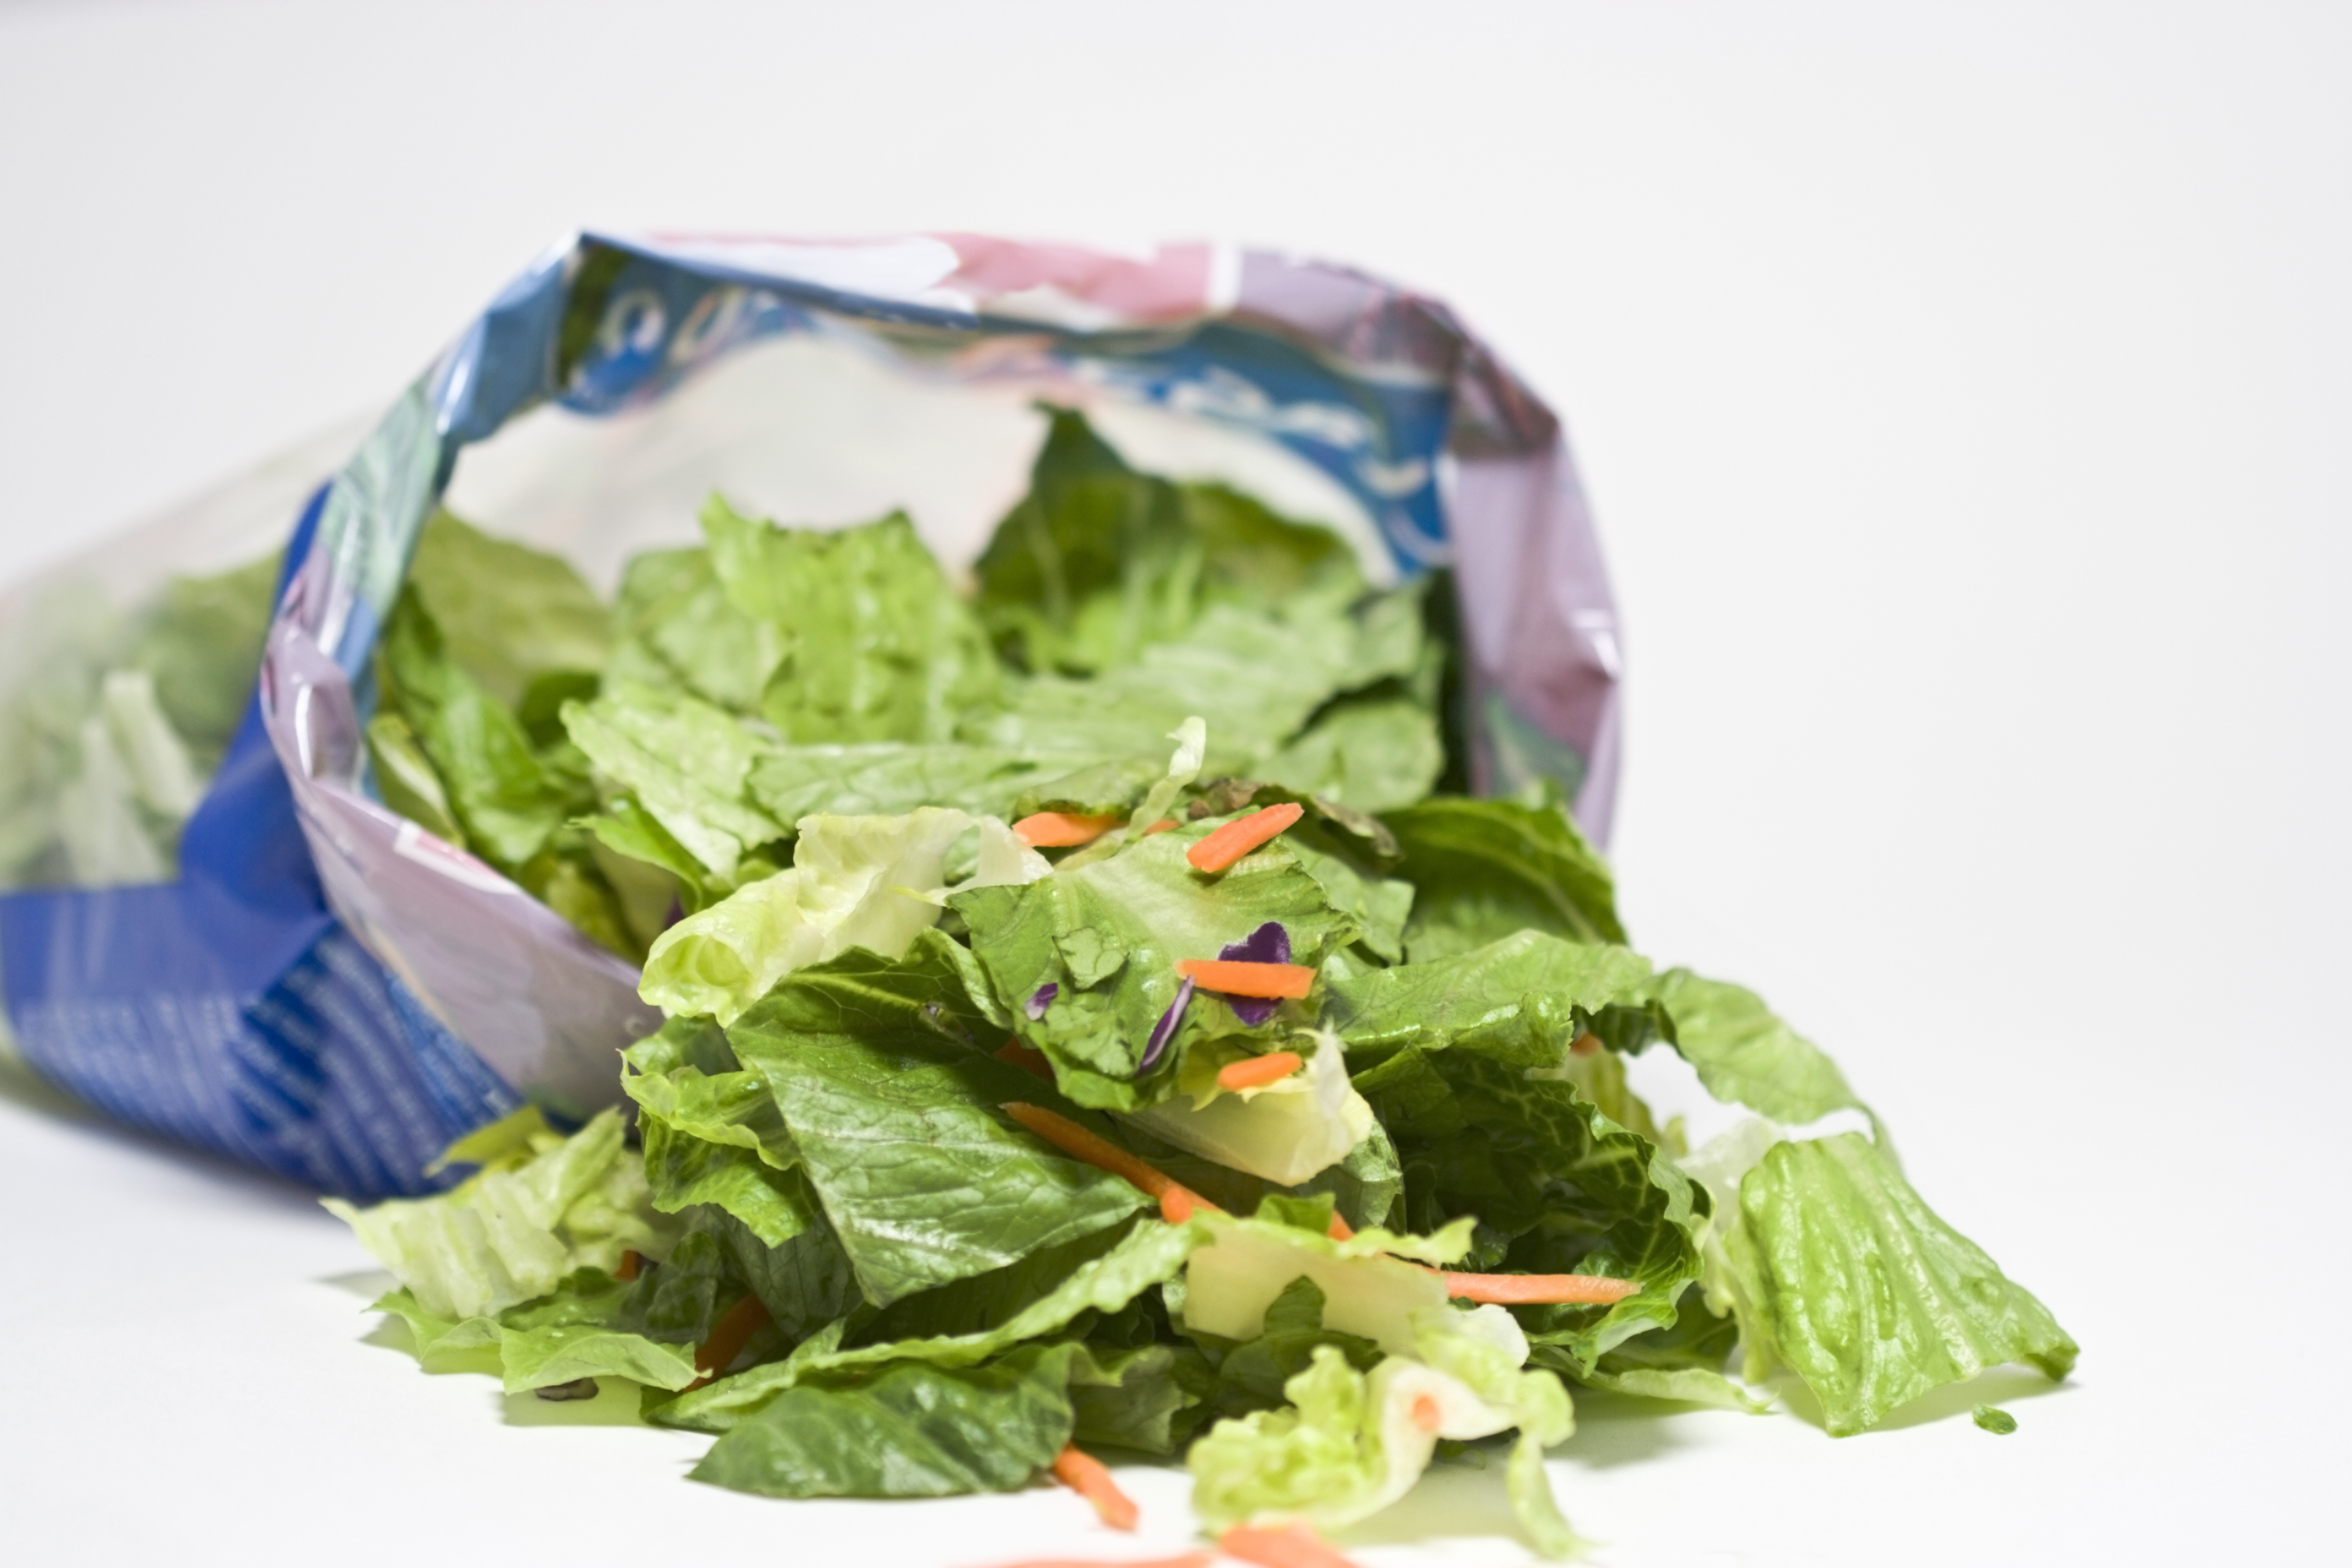 An open bag of salad.